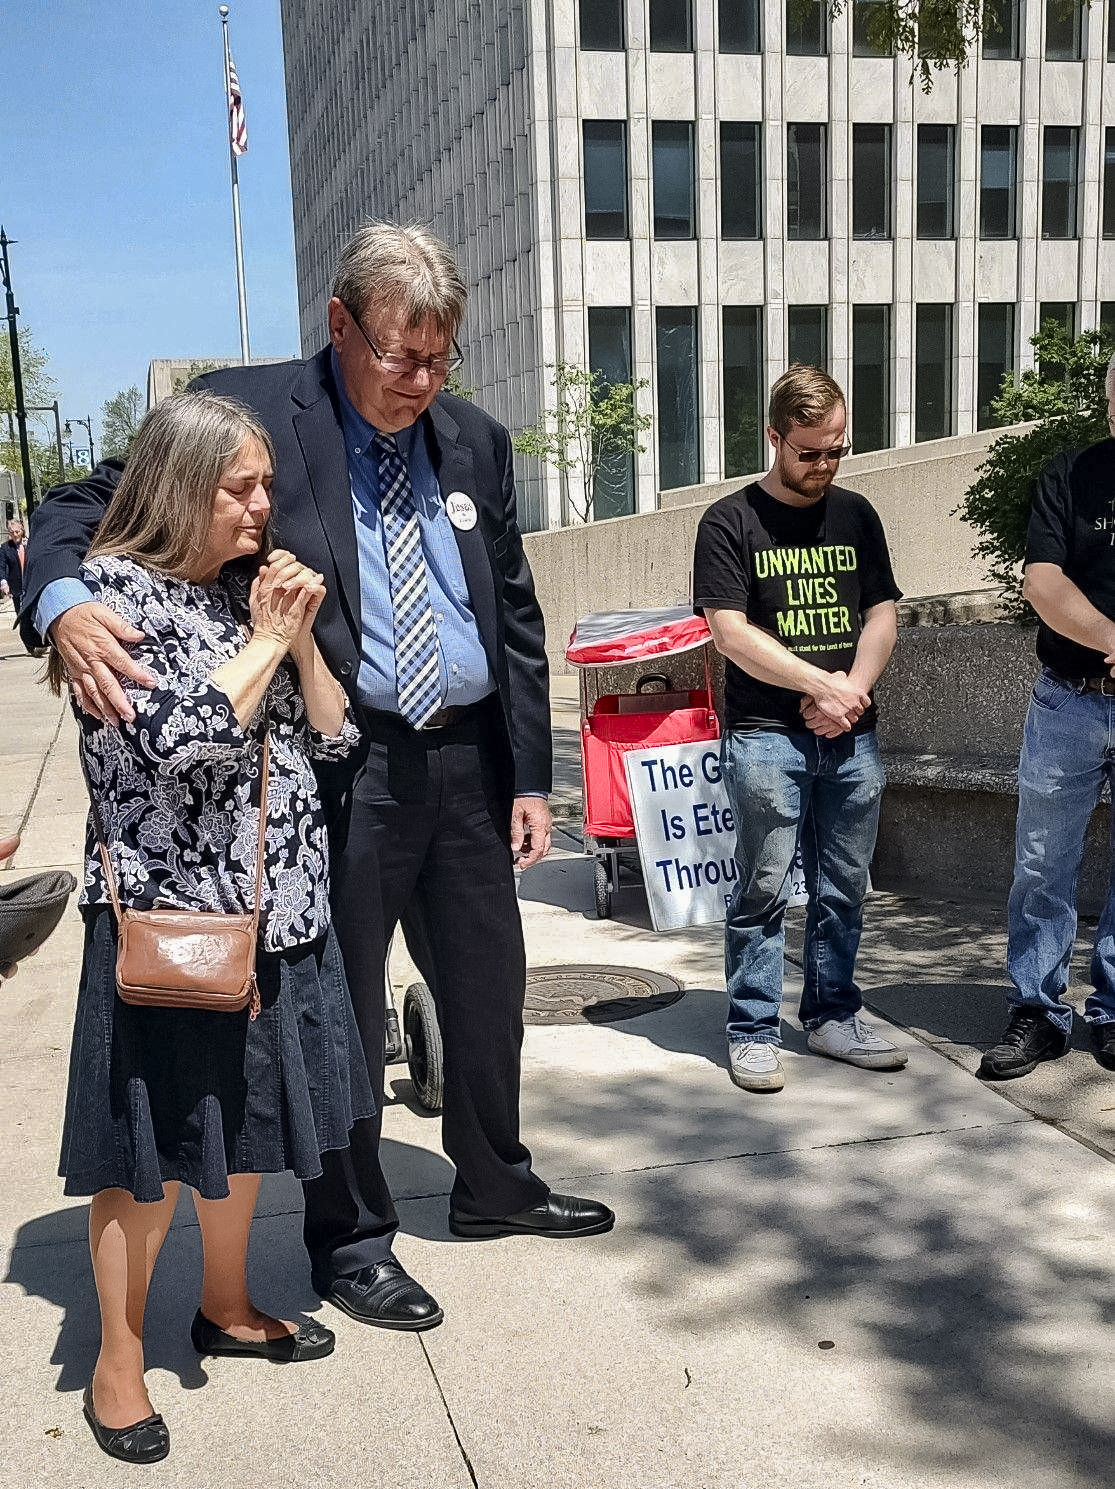 Bà Trish và ông Calvin Zastrow, cùng với những người ủng hộ, cầu nguyện trước khi vào tòa án ở Grand Rapids, Michigan, vào ngày 11/05/2023. (Ảnh: Được đăng dưới sự cho phép của ông Cal Zastrow)